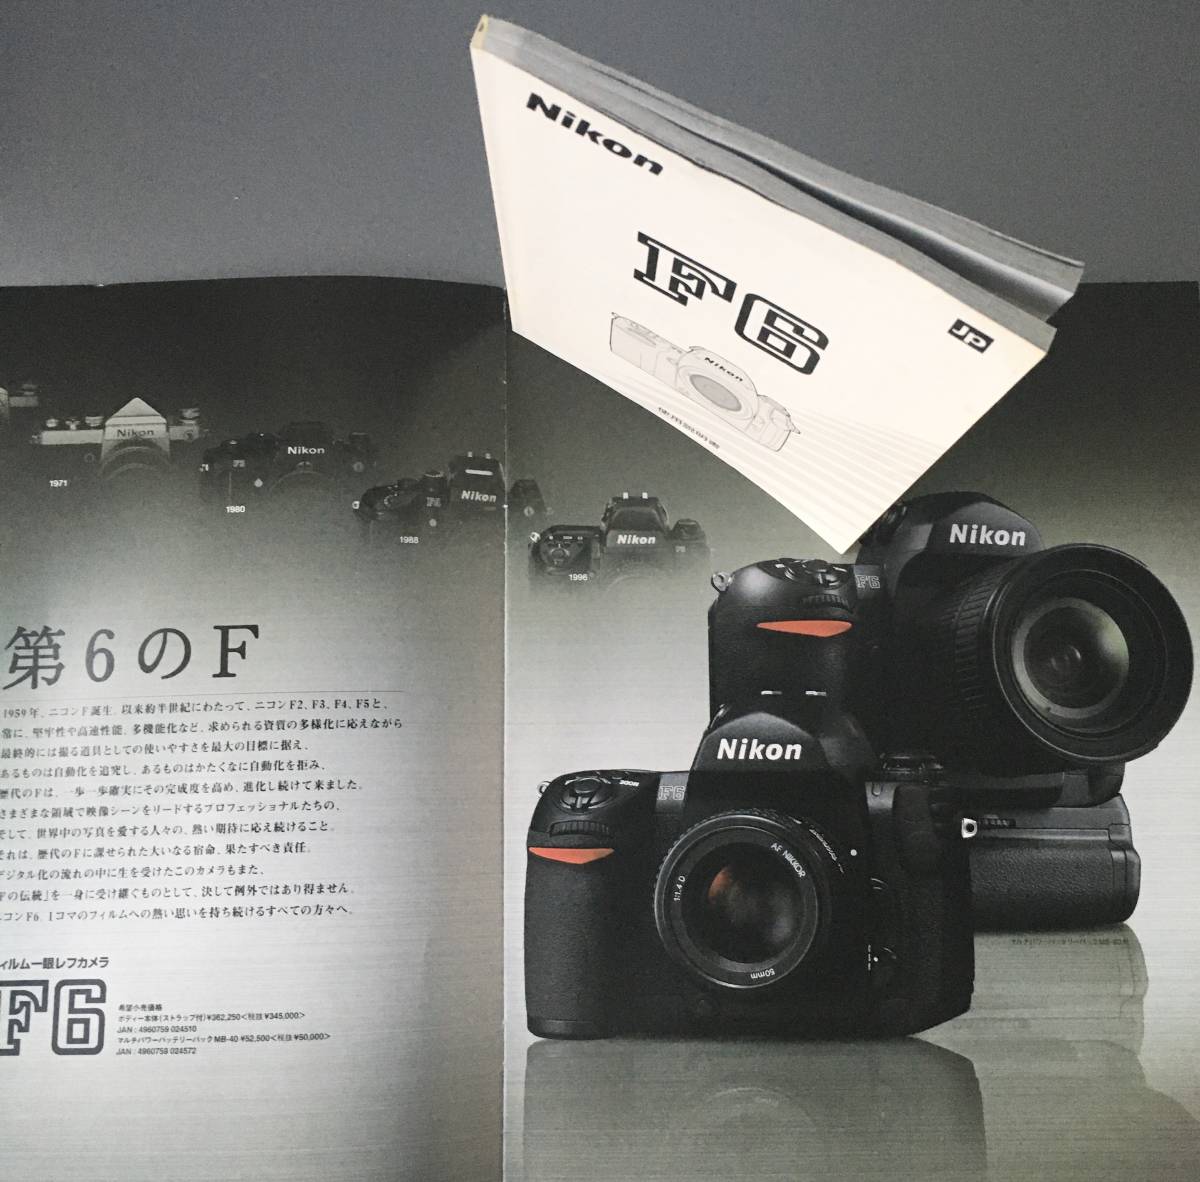 Nikon ニコンD5100 使用説明書 カタログ4点セット